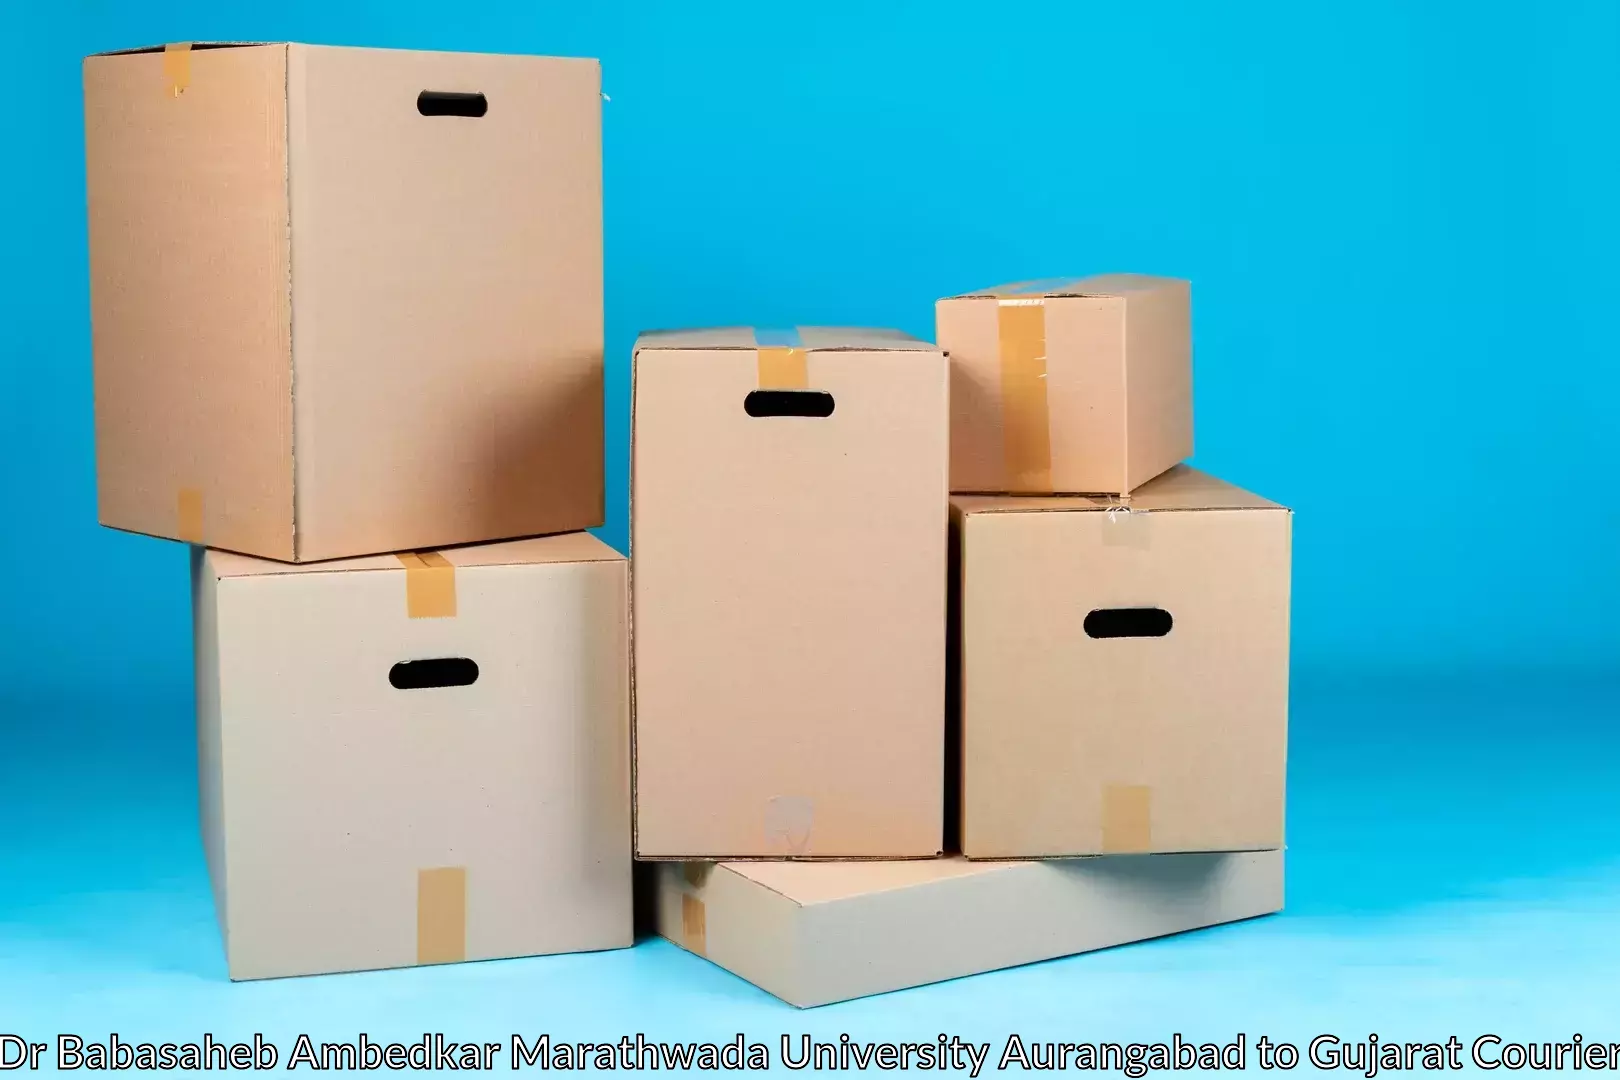 Home moving and storage Dr Babasaheb Ambedkar Marathwada University Aurangabad to Vatadara